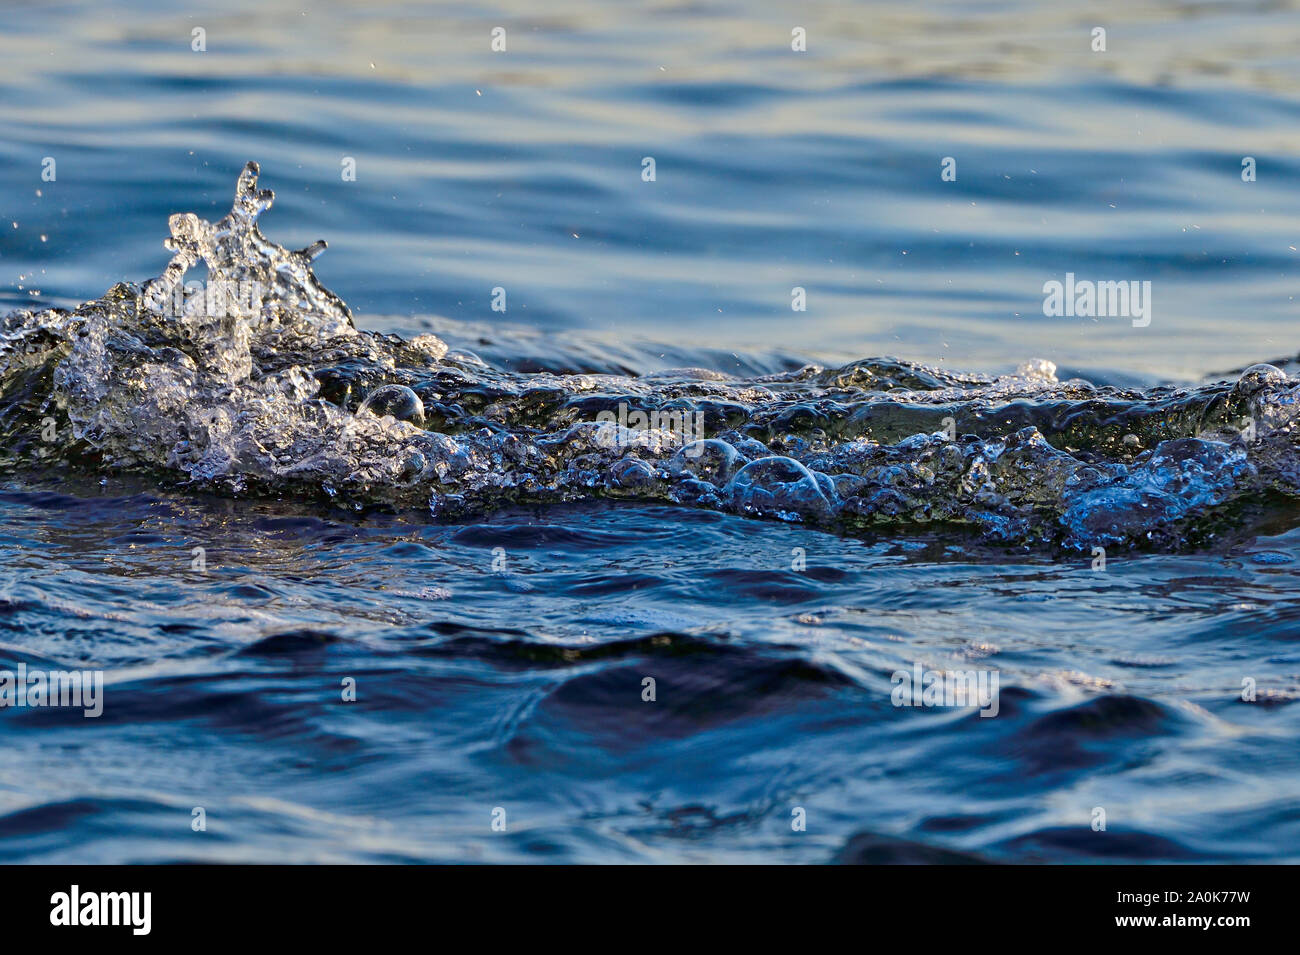 Ein horizontales Bild von Meer Wasser spritzt und sprudelt, wie die Wellen nach innen an der Küste von Vancouver Island, British Columbia Kanada bewegen. Stockfoto